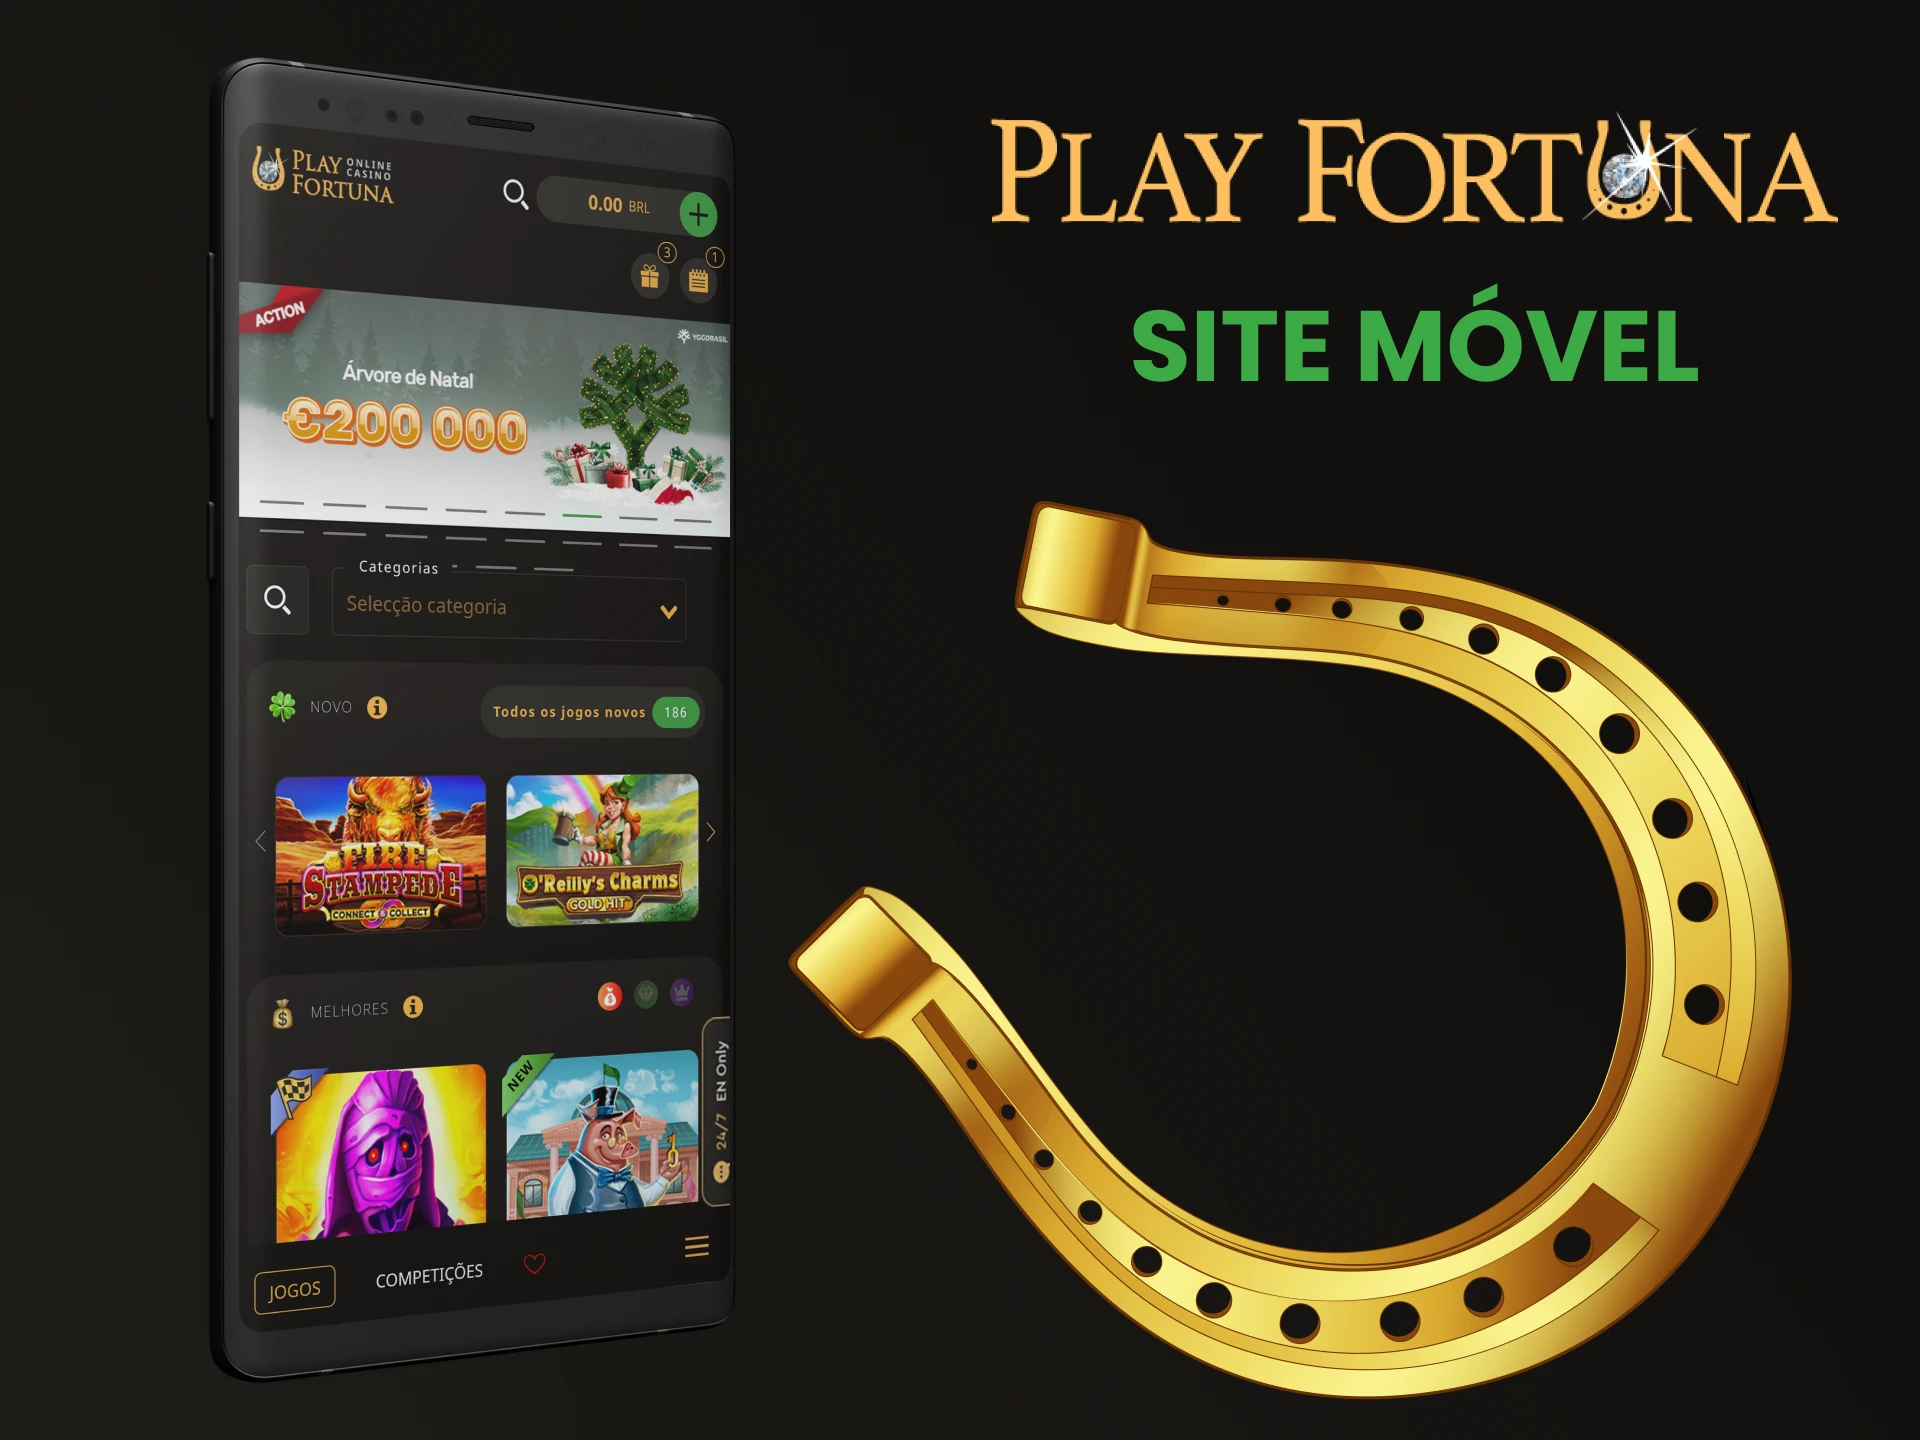 Visite a versão mobile do aplicativo Play Fortuna.